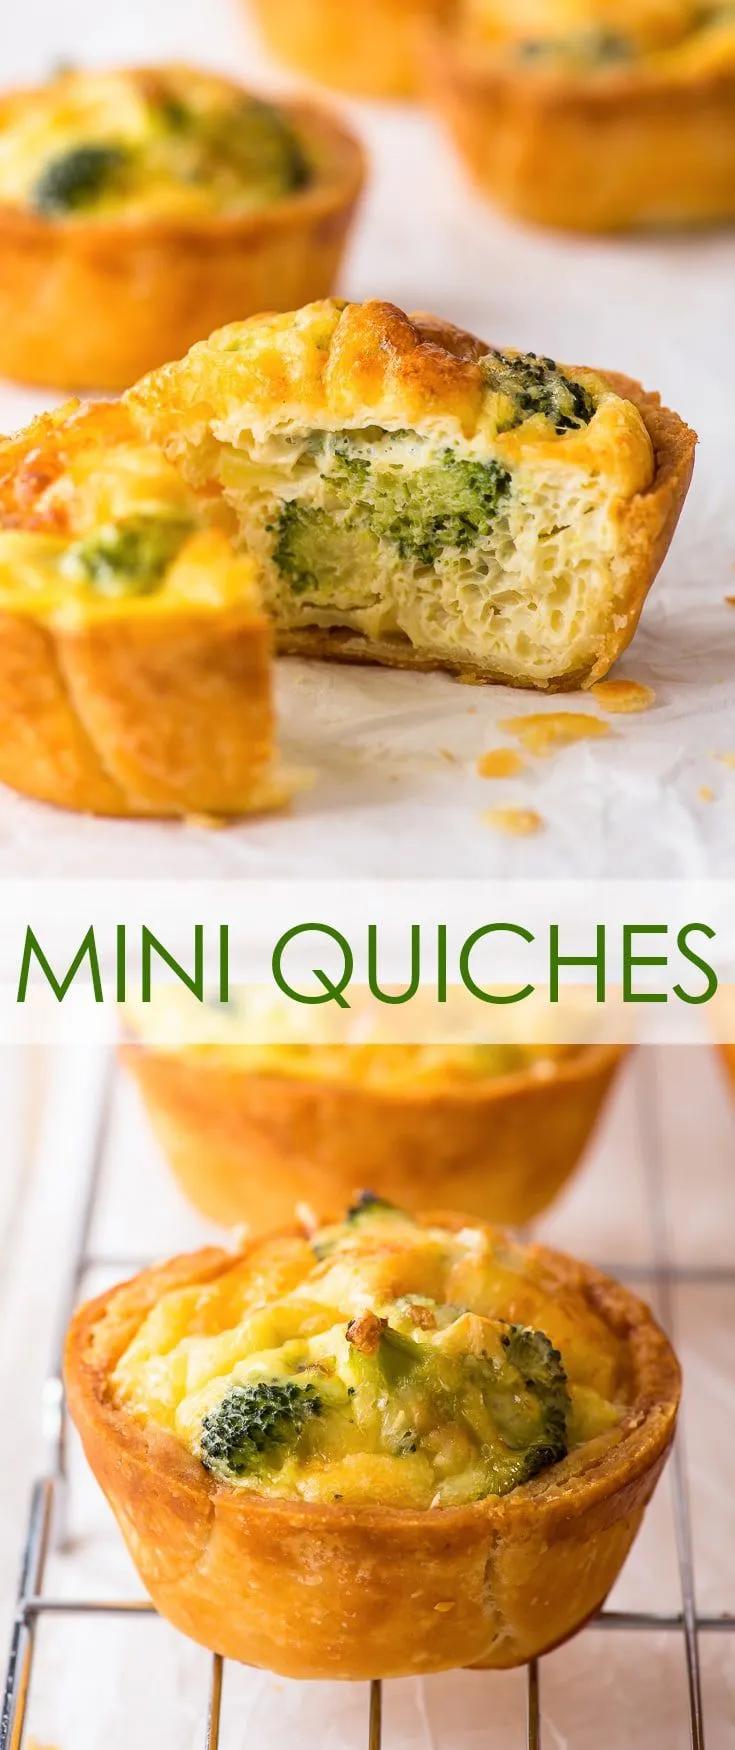 Easy Mini Quiches Recipe 3 Ways (Gluten Free) - These mini quiches are ...